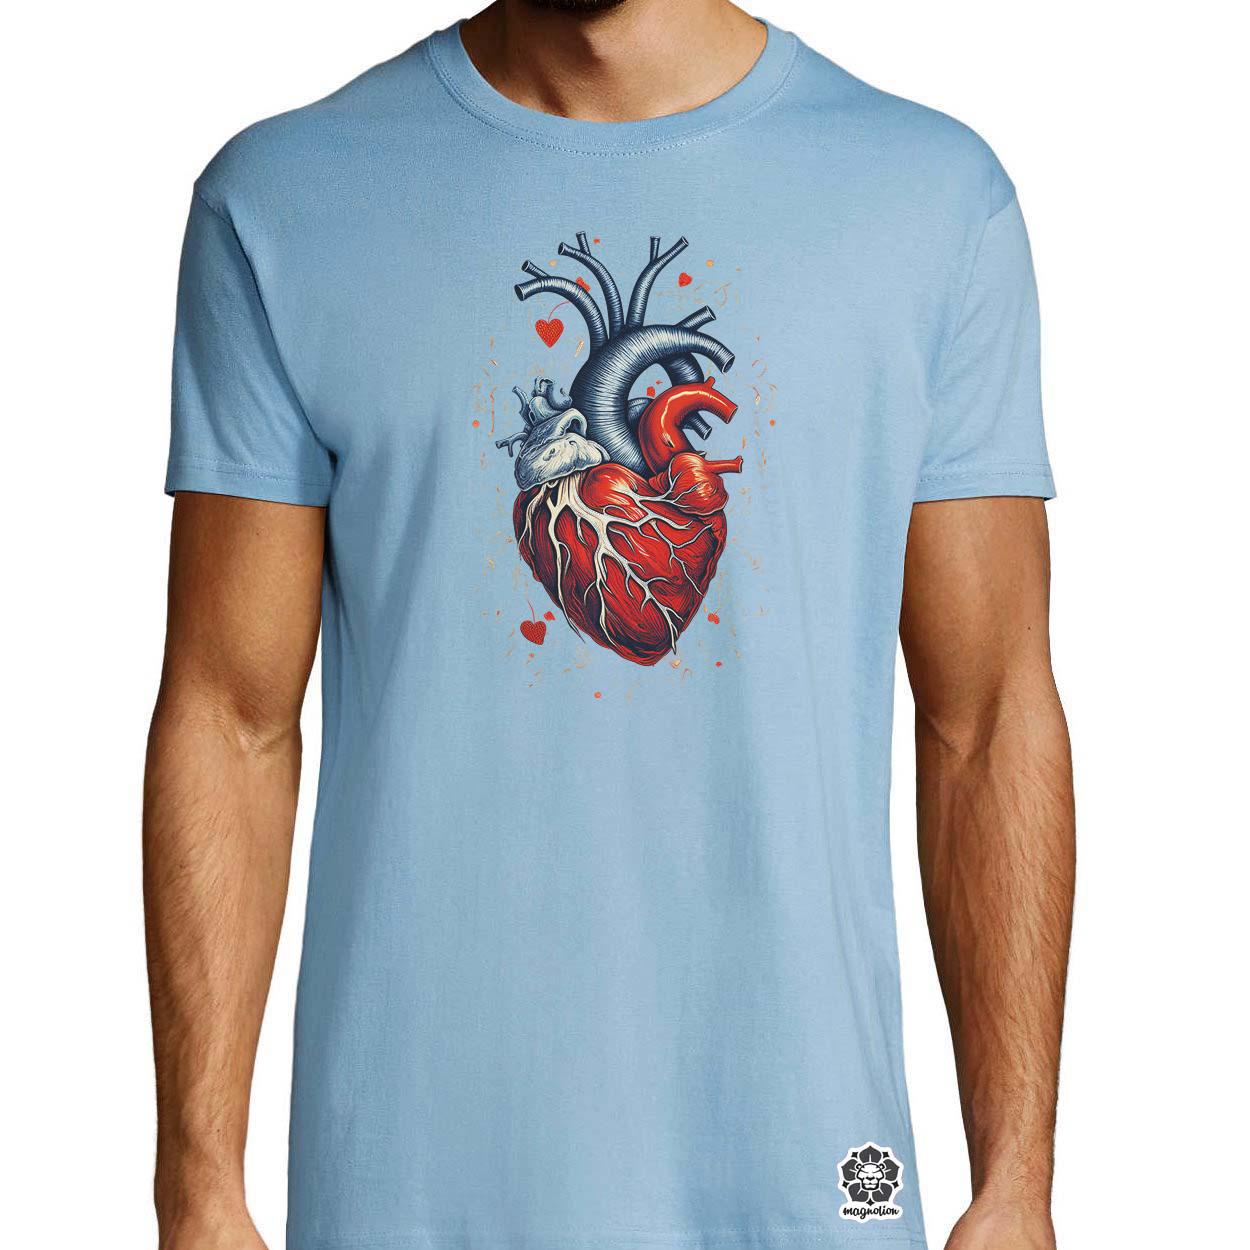 Anatom szív v2